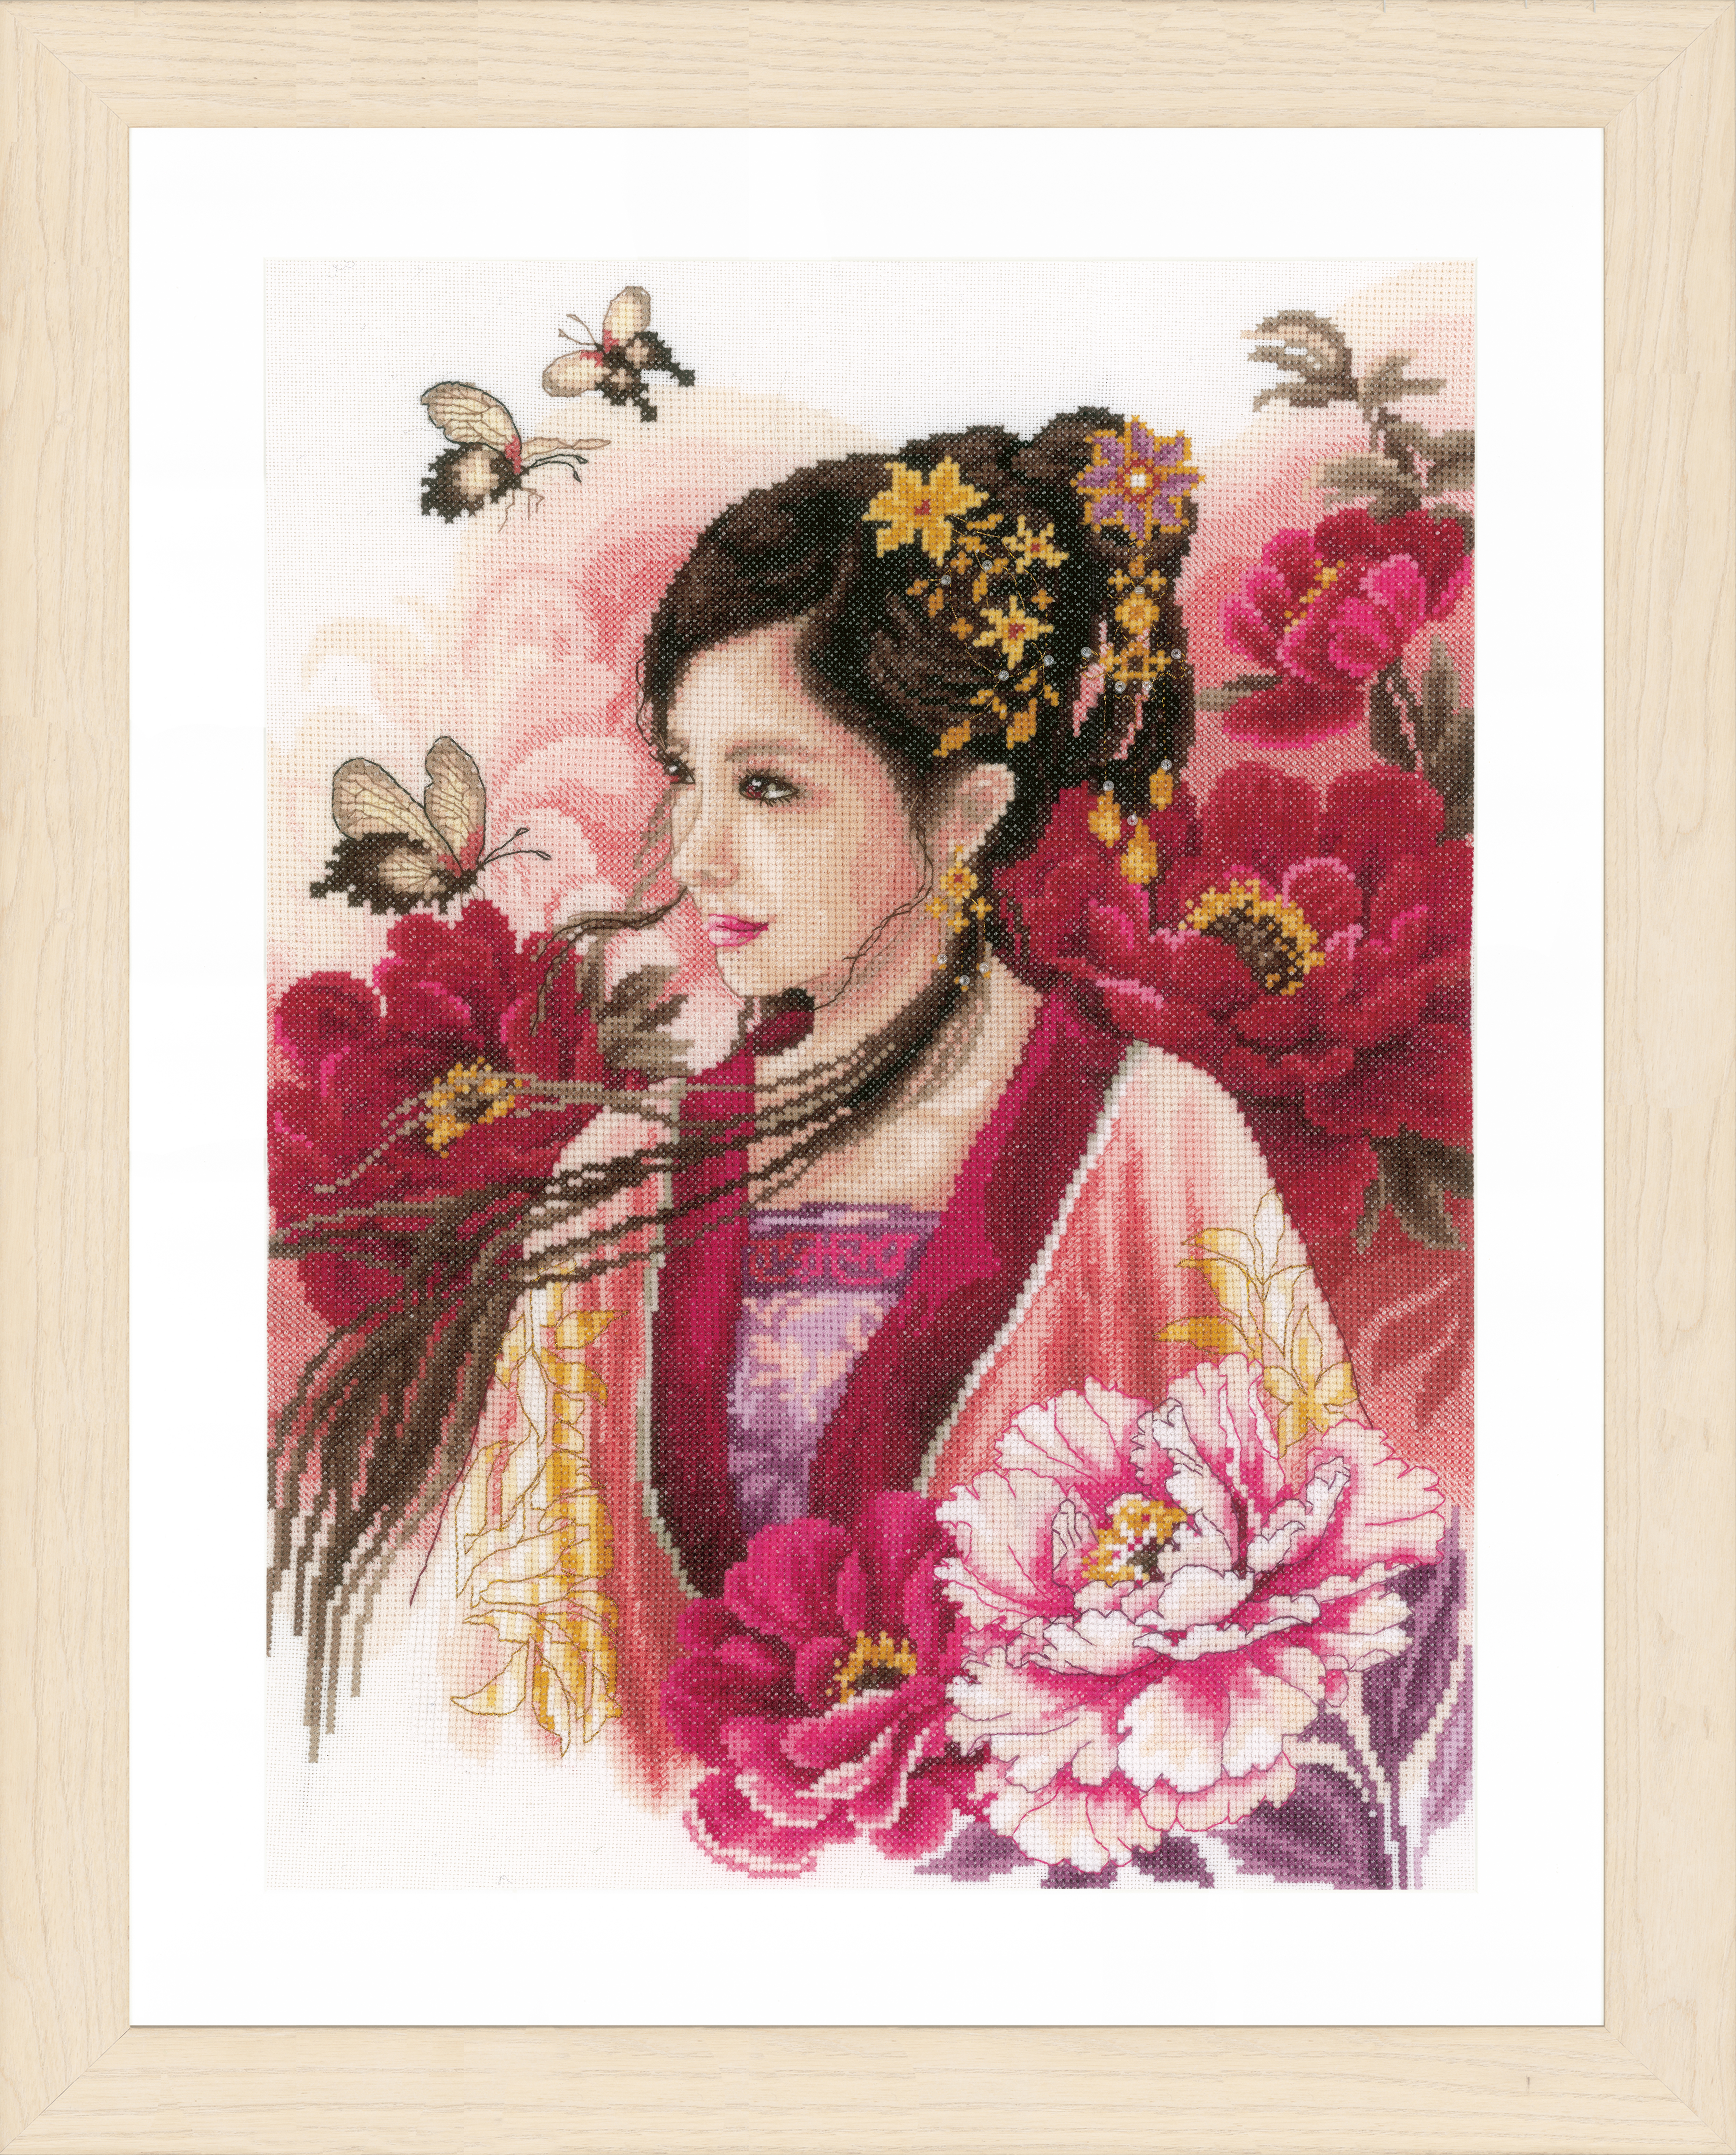 Kit point de croix compté Lanarte : femme asiatique en rose (evenweave) - Photo 1/1